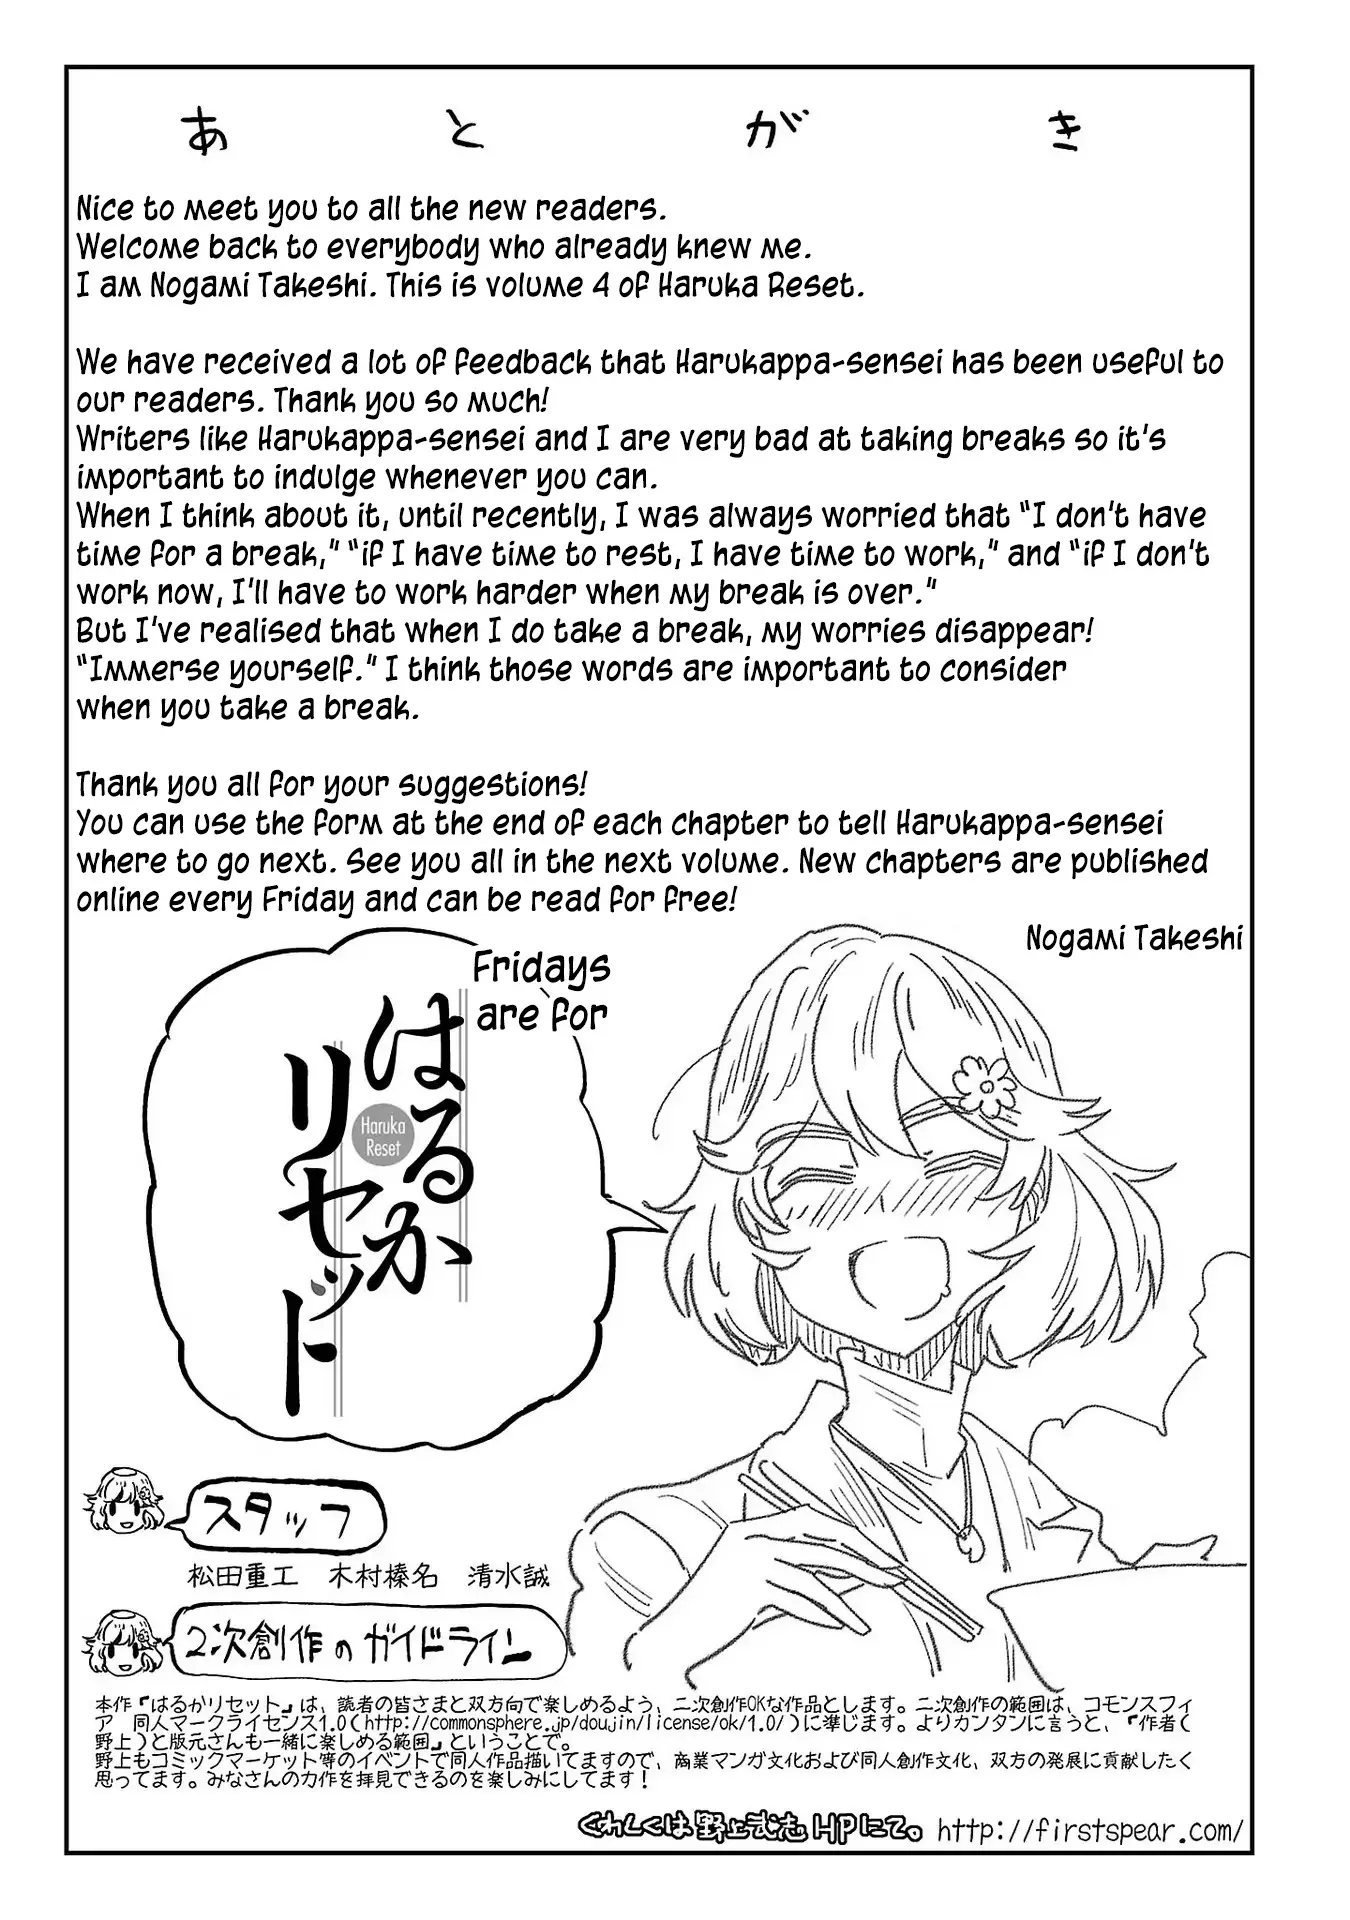 Haruka Reset - 32.1 page 7-0a7e181a